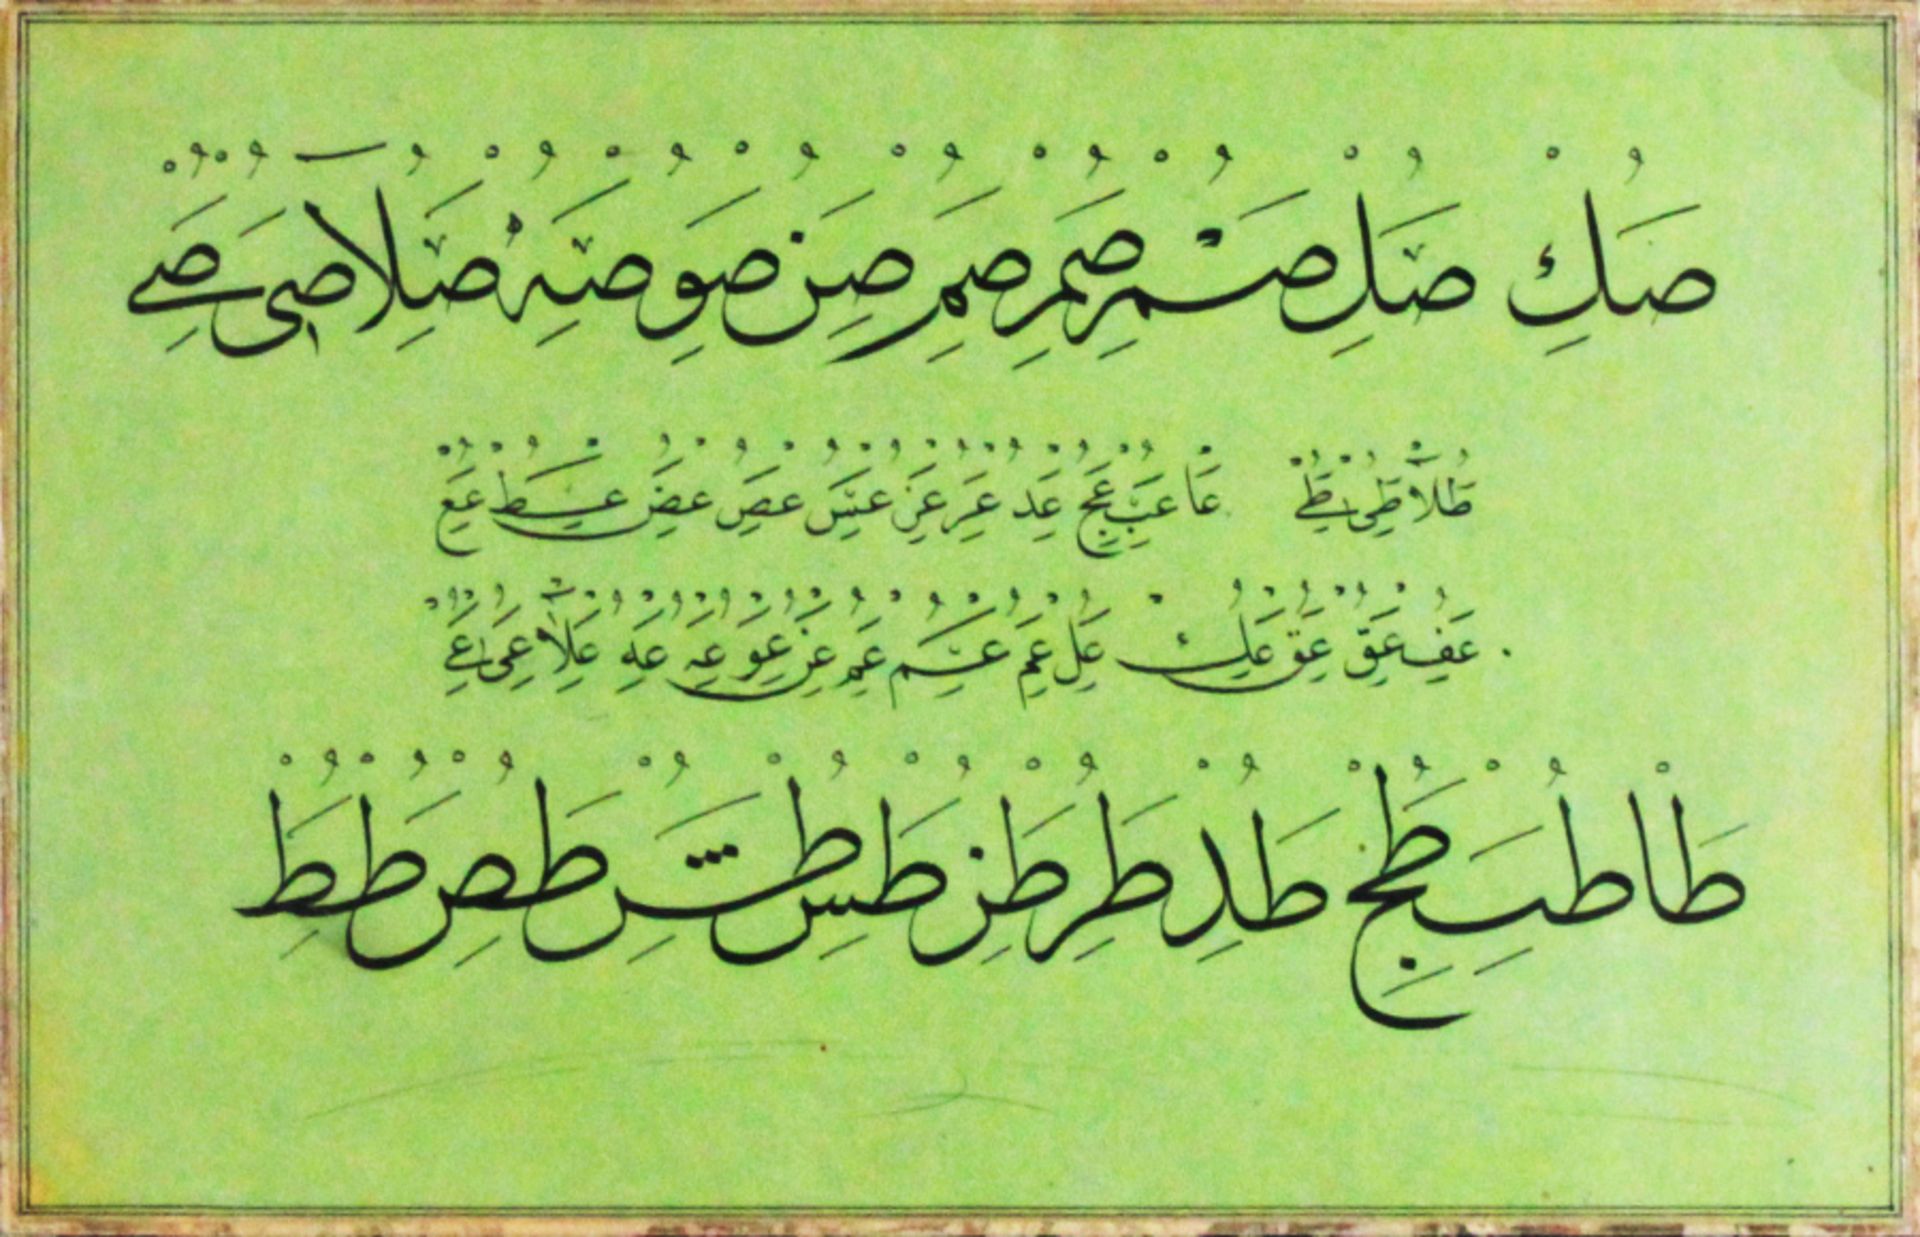 Calligraphy Tuluth Nesih Mesk - Image 2 of 4